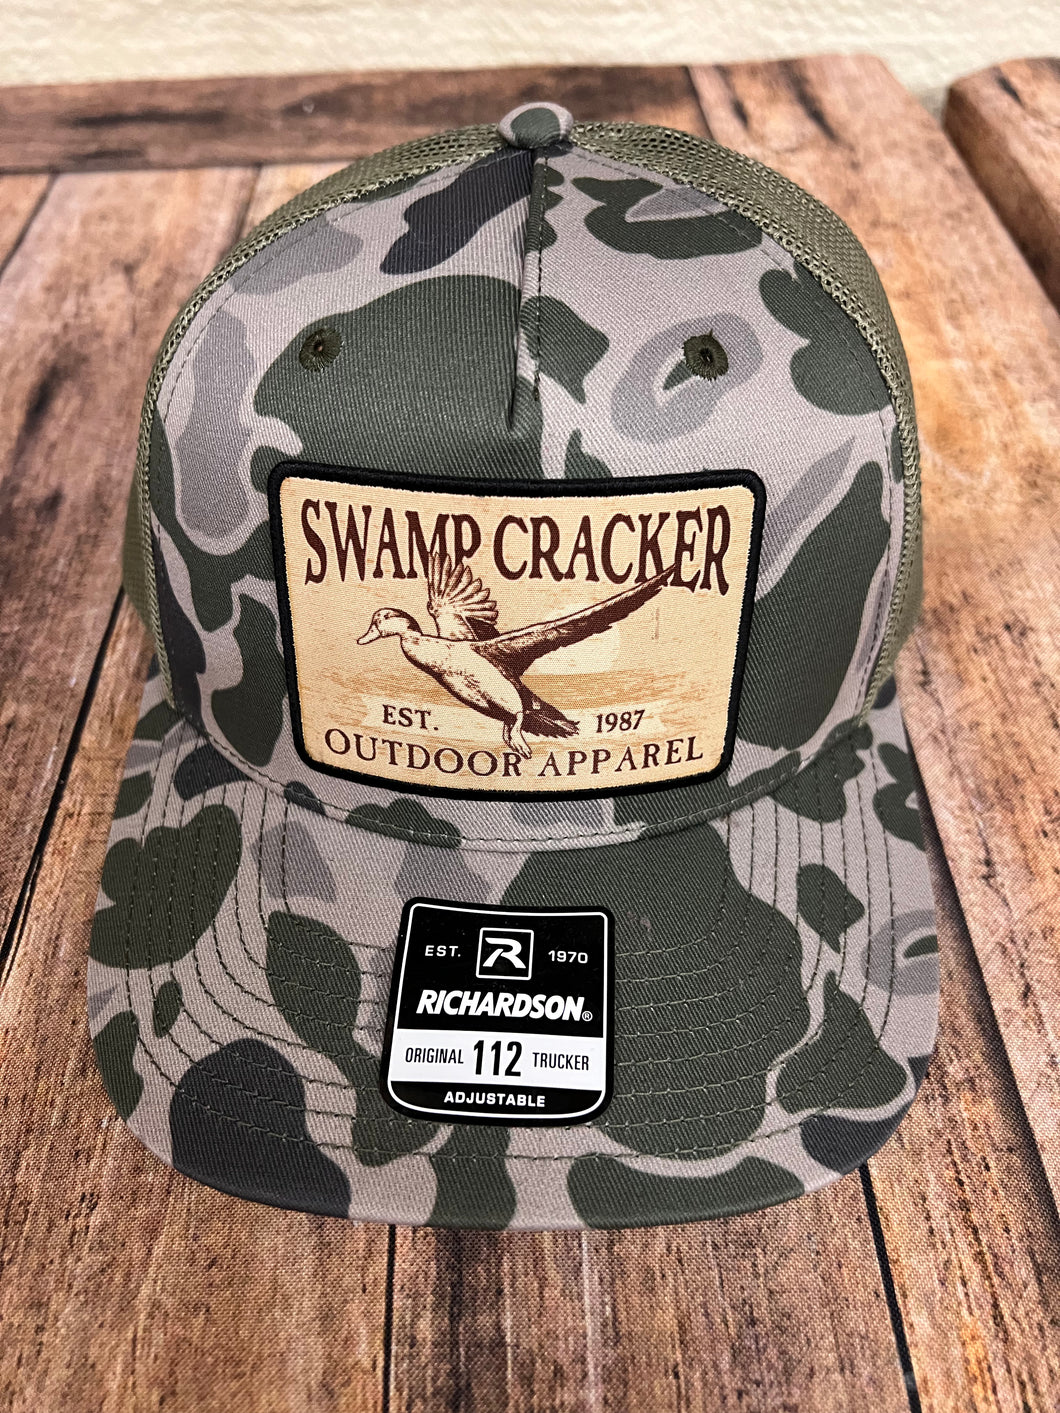 Marsh camo duck patch hat – Swamp Cracker Outdoor Apparel